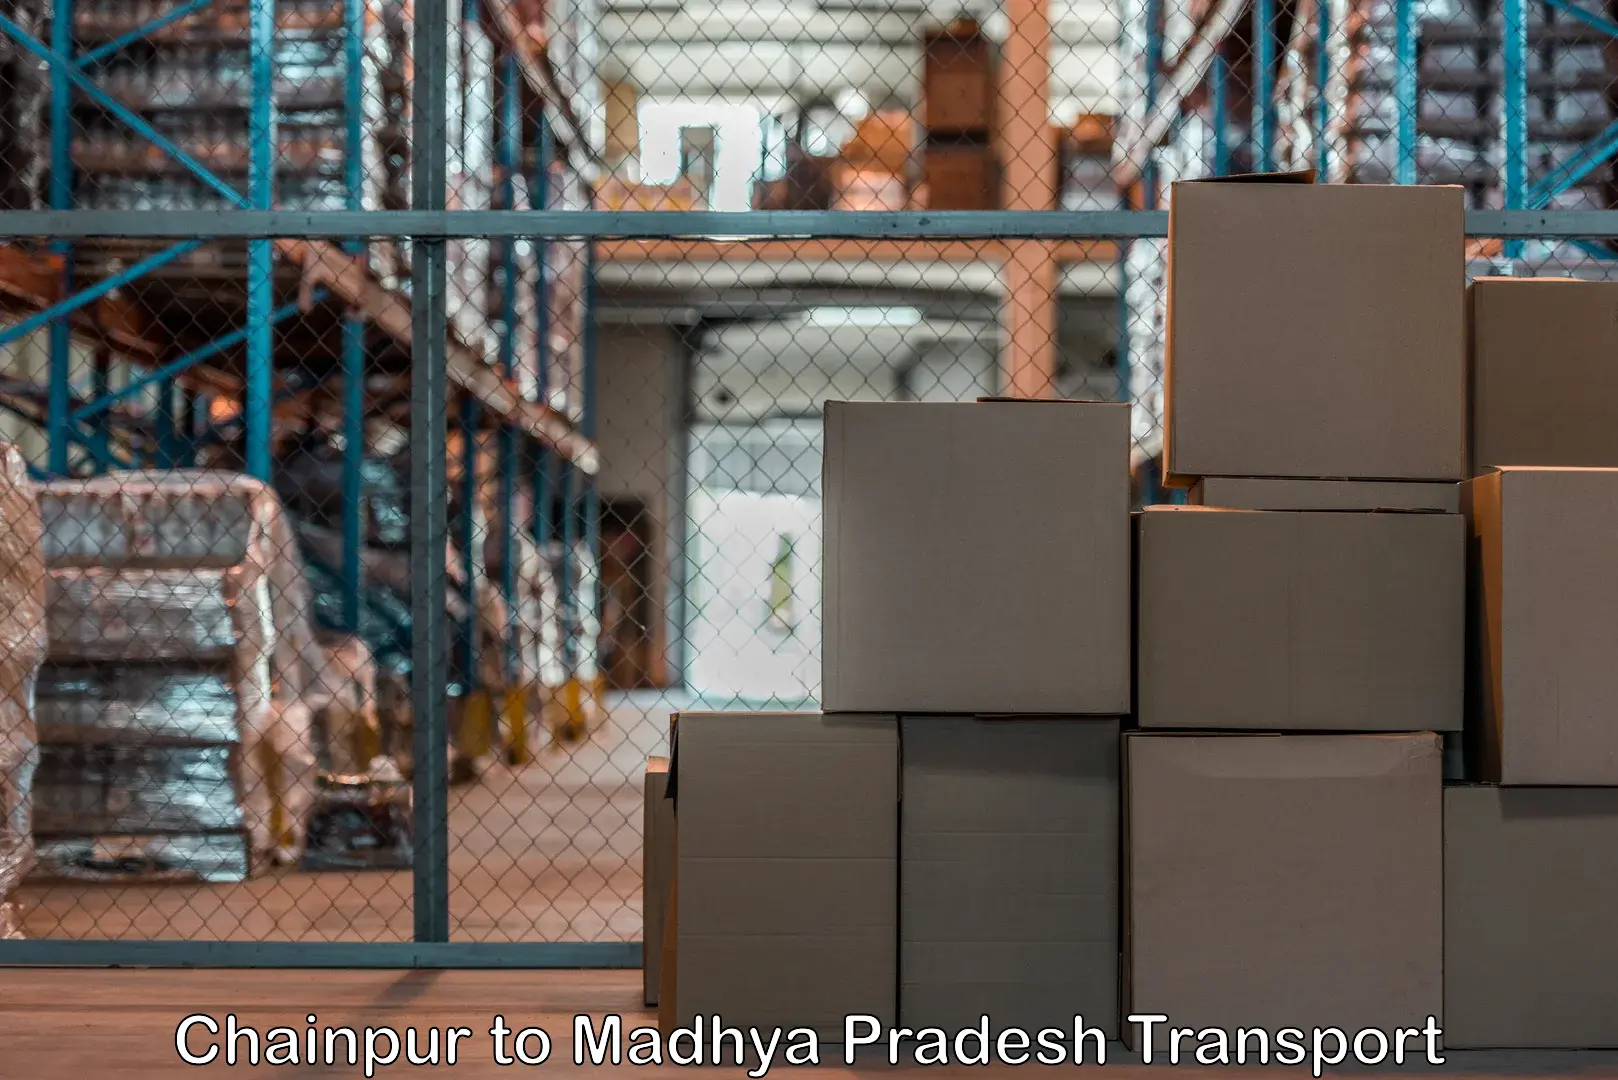 Air freight transport services Chainpur to Sagar